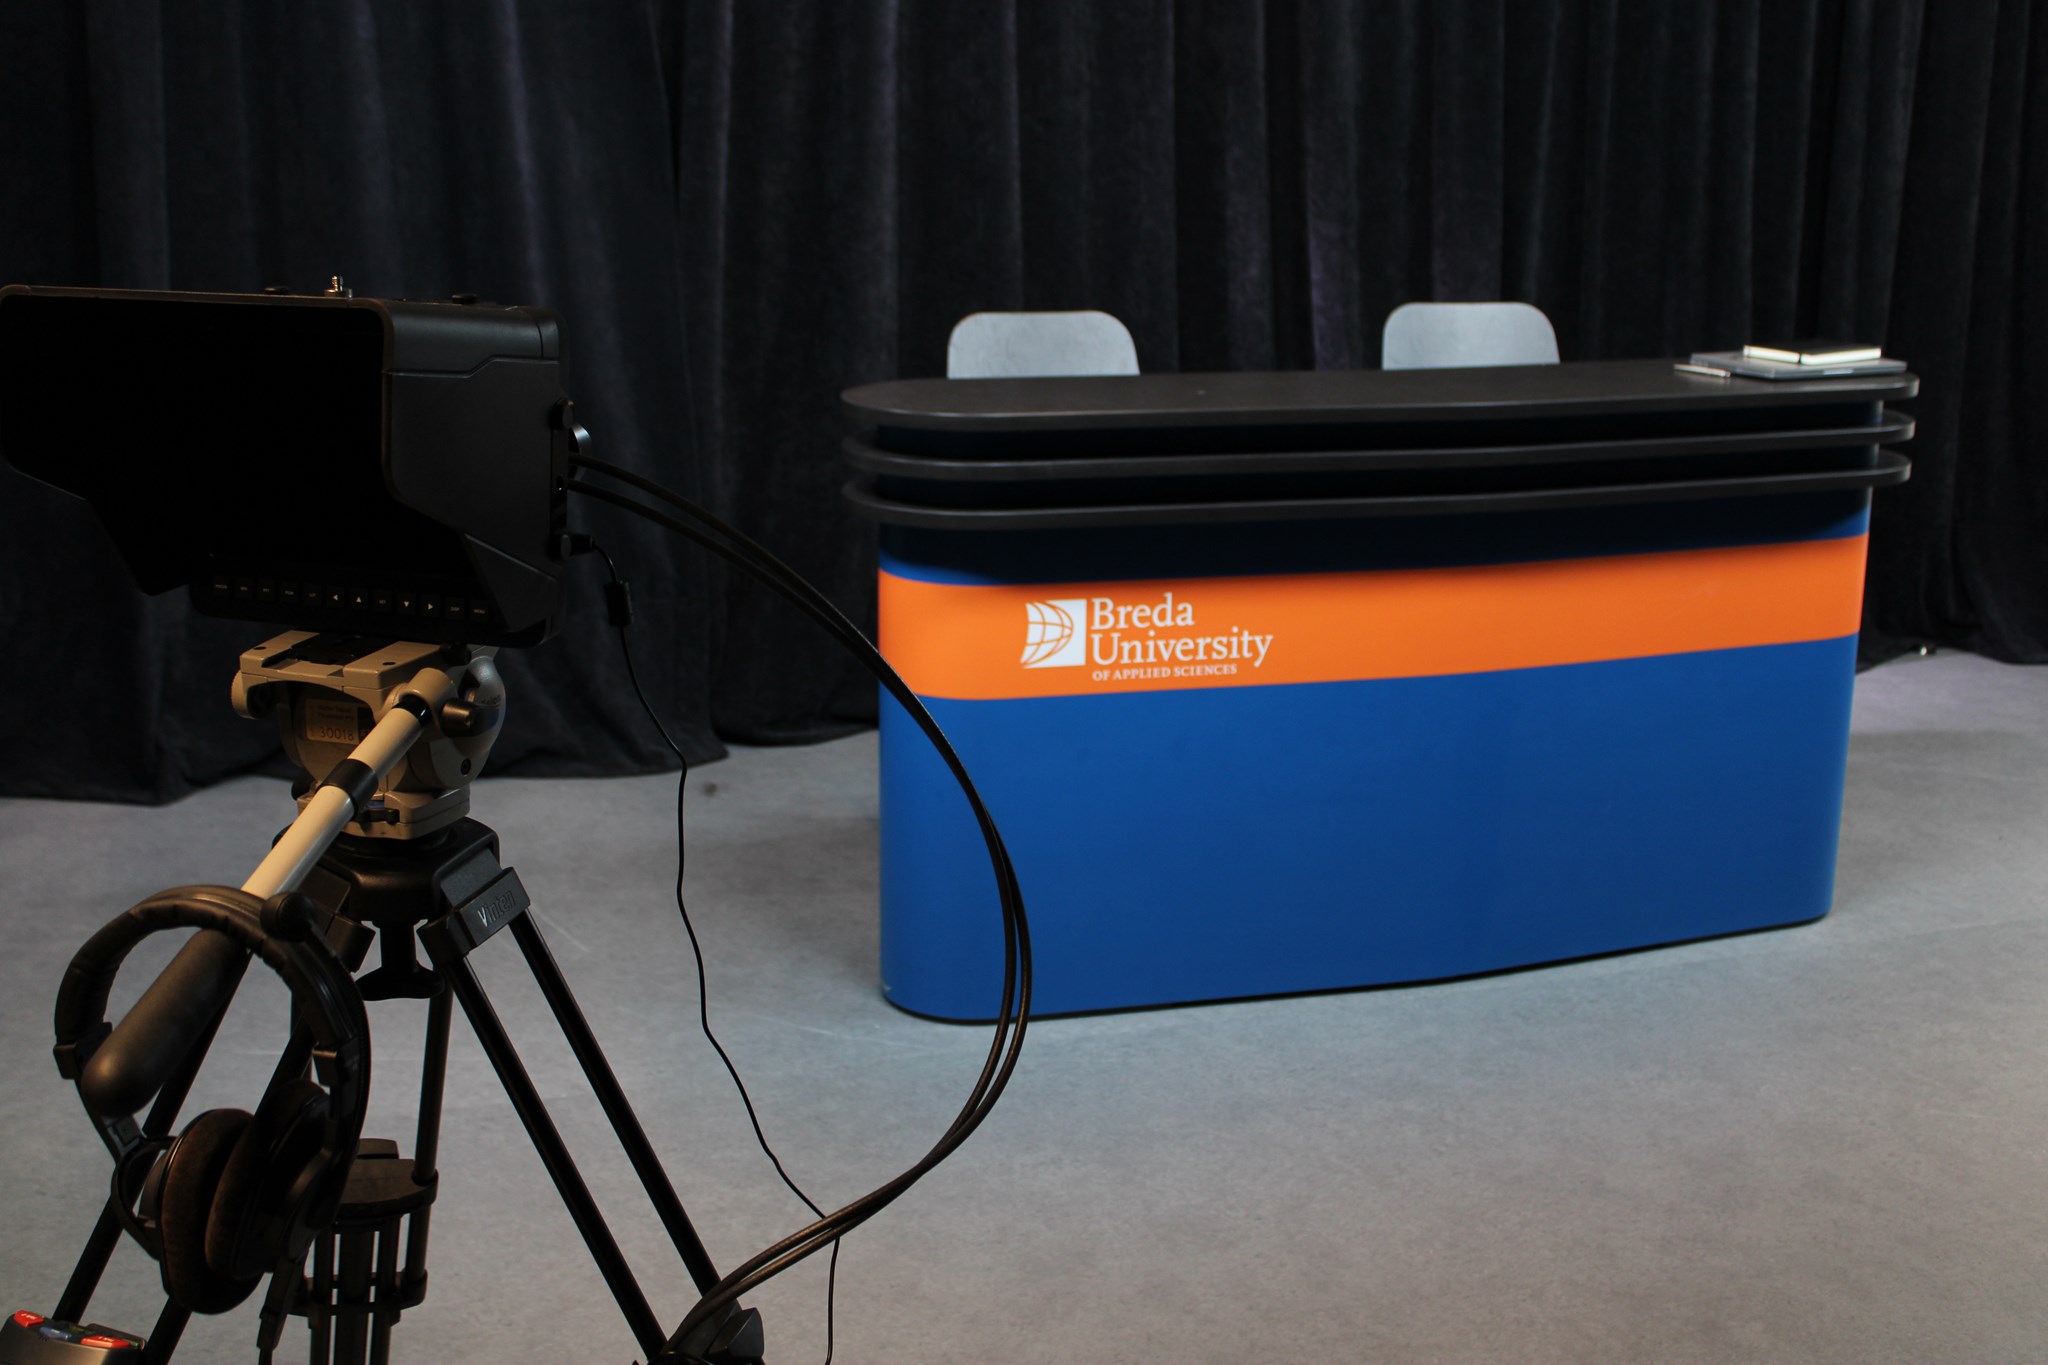 De presentatie desk van de tv-studio Breda University of Applied Sciences